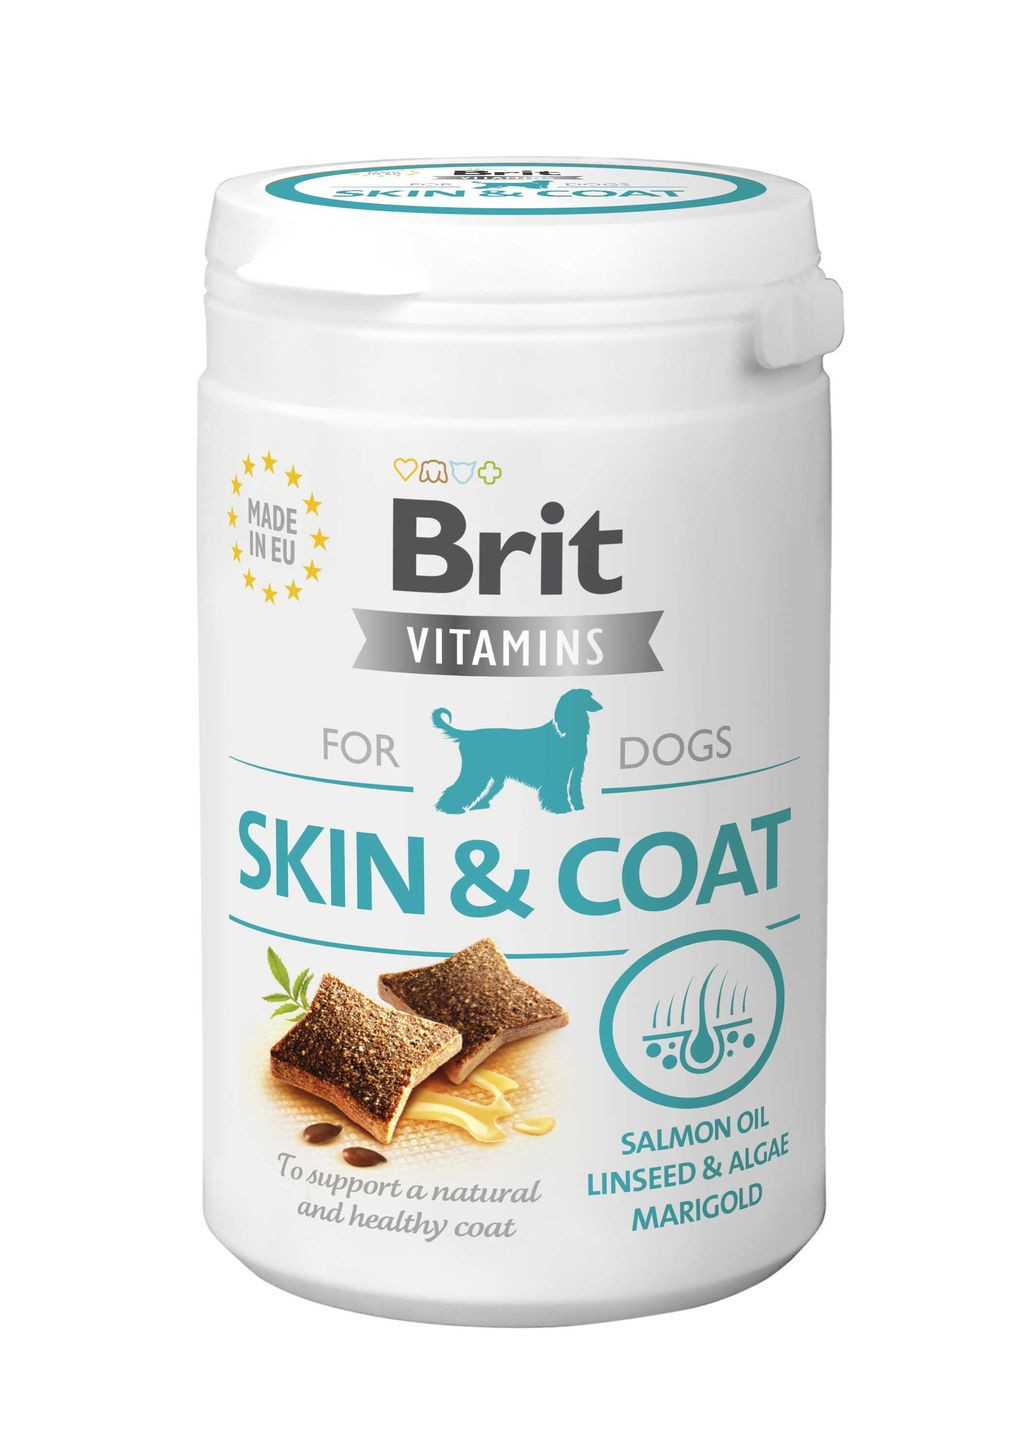 Витамины для собак Vitamins Skin and Coat для кожи и шерсти, 150 г Brit (266900402)